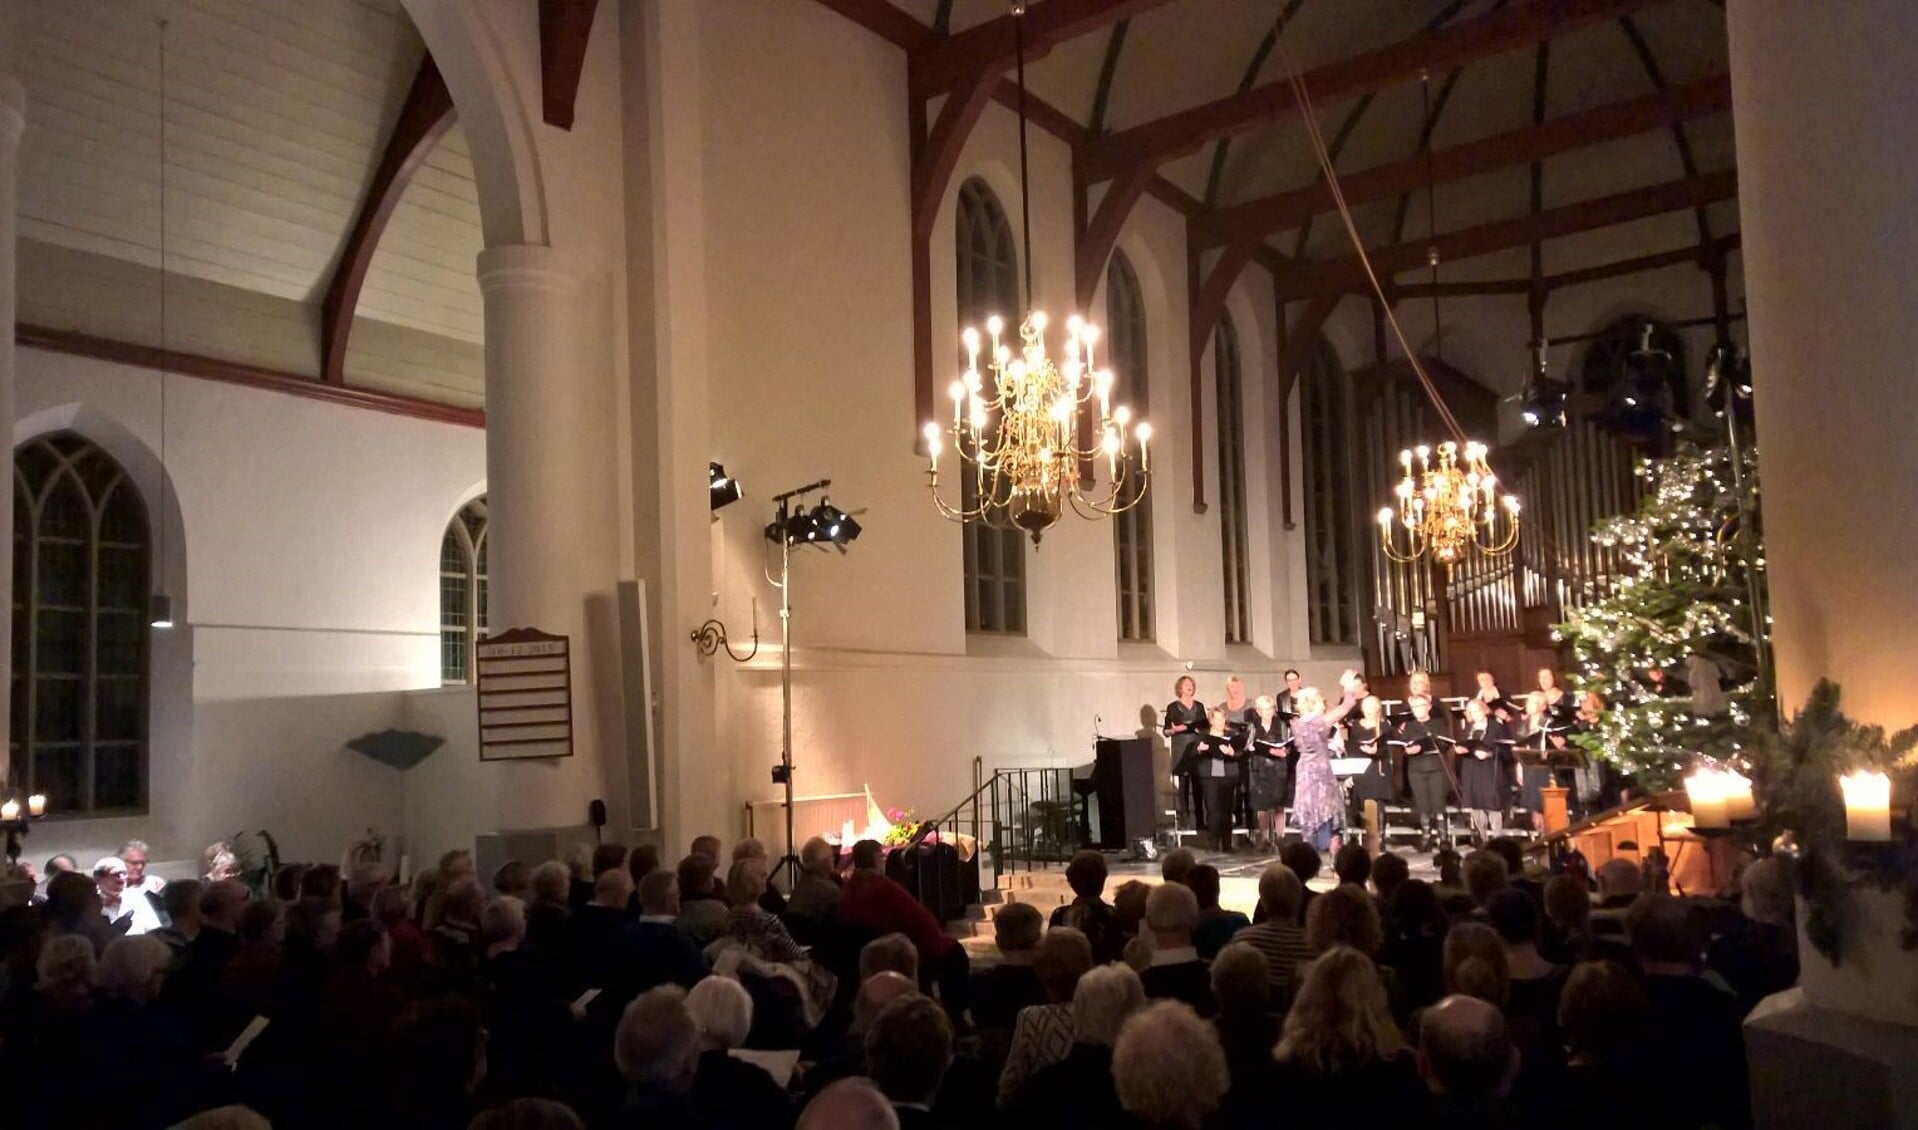 Kerstconcert 'in een kribbe' in Allemanskerk. (Foto: aangeleverd)